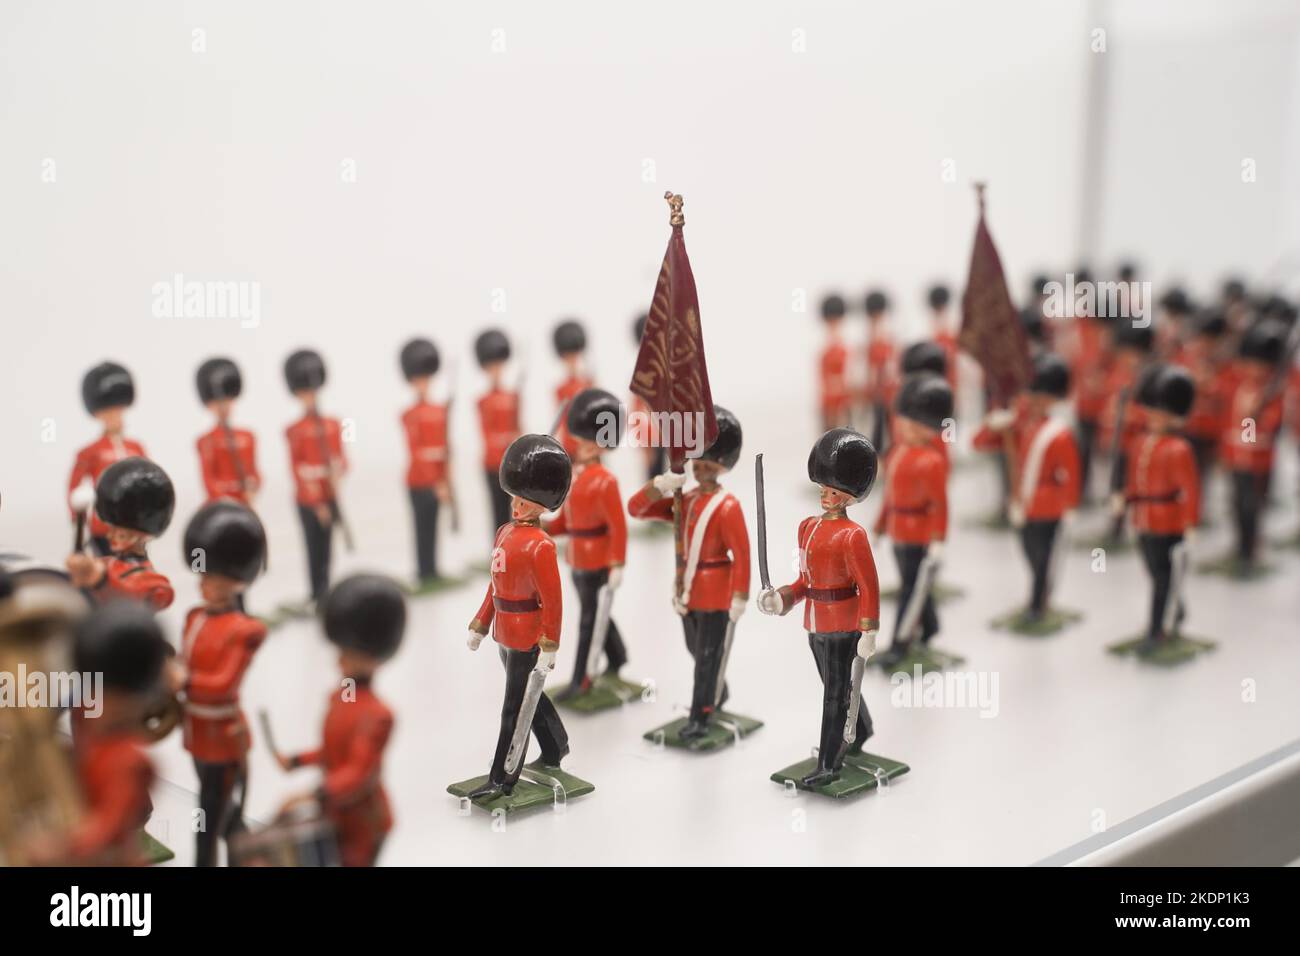 Objets de collection de soldats de jouets vintage exposés, fabriqués en Grande-Bretagne, populaires au début de 1900 autour de la période de la guerre mondiale i et ii Banque D'Images